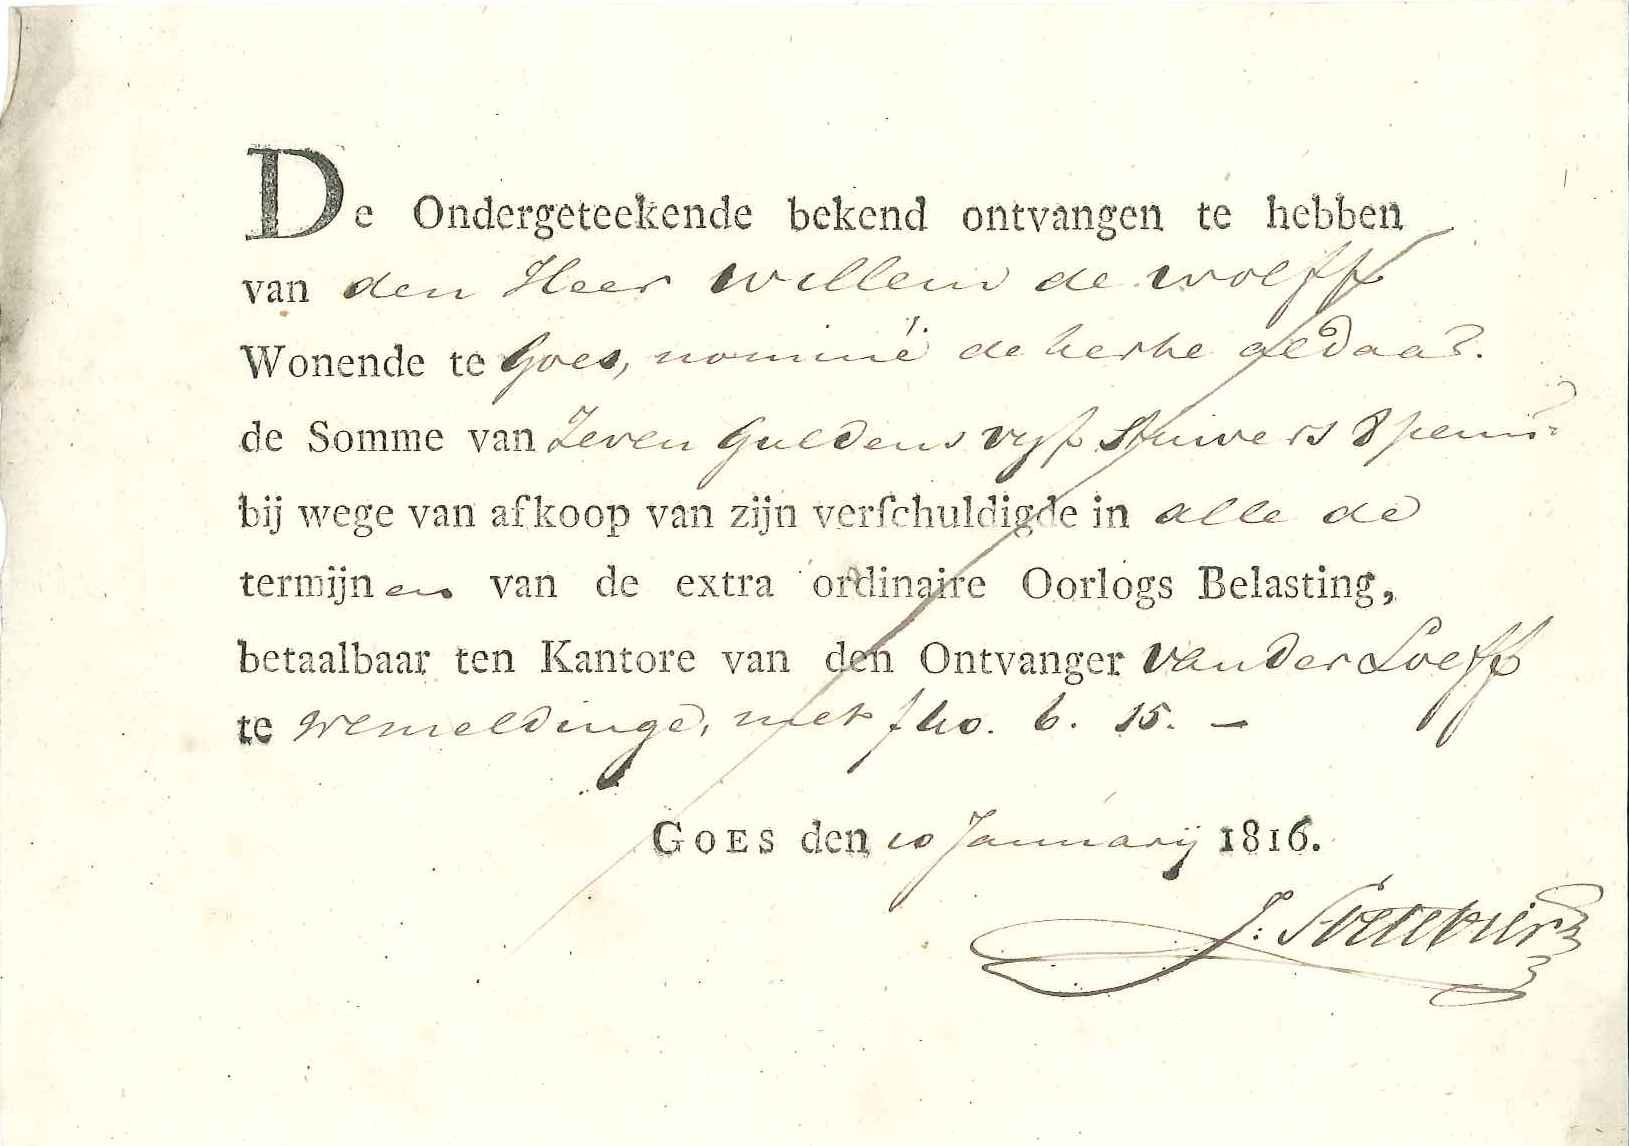 Kwitantie van de betaling door de hervormde kerk van de oorlogsbelasting, 1816.